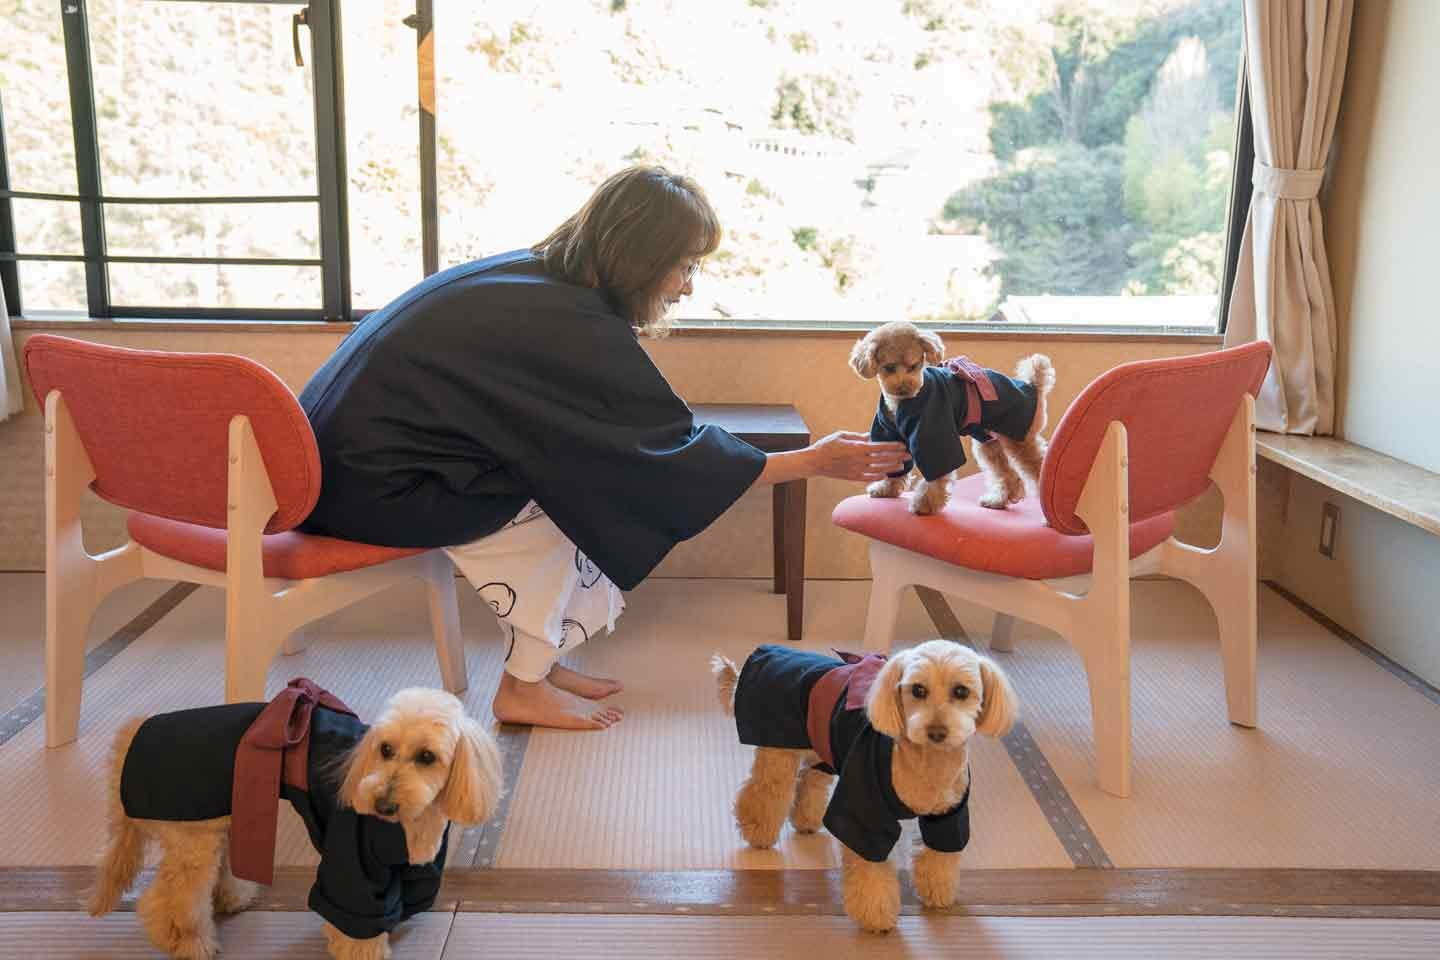 「愛犬の接客が一番楽しい」イヌバウンドを目指し方針転換。“犬ファースト”を掲げる伊豆の老舗旅館